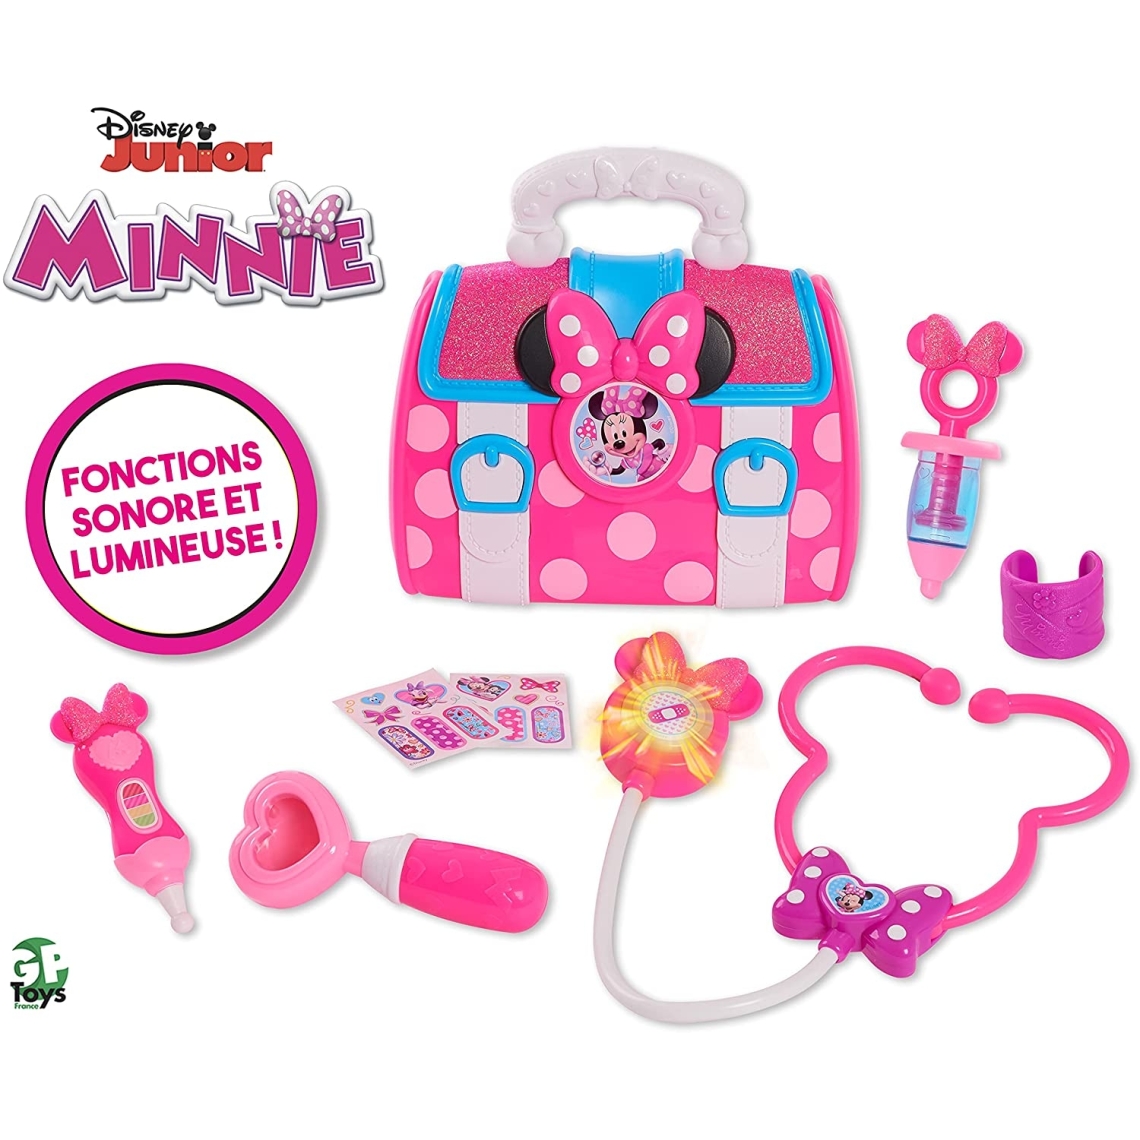 Minnie - Malette Docteur - Minnie - Sonore Et Lumineuse - Docteur